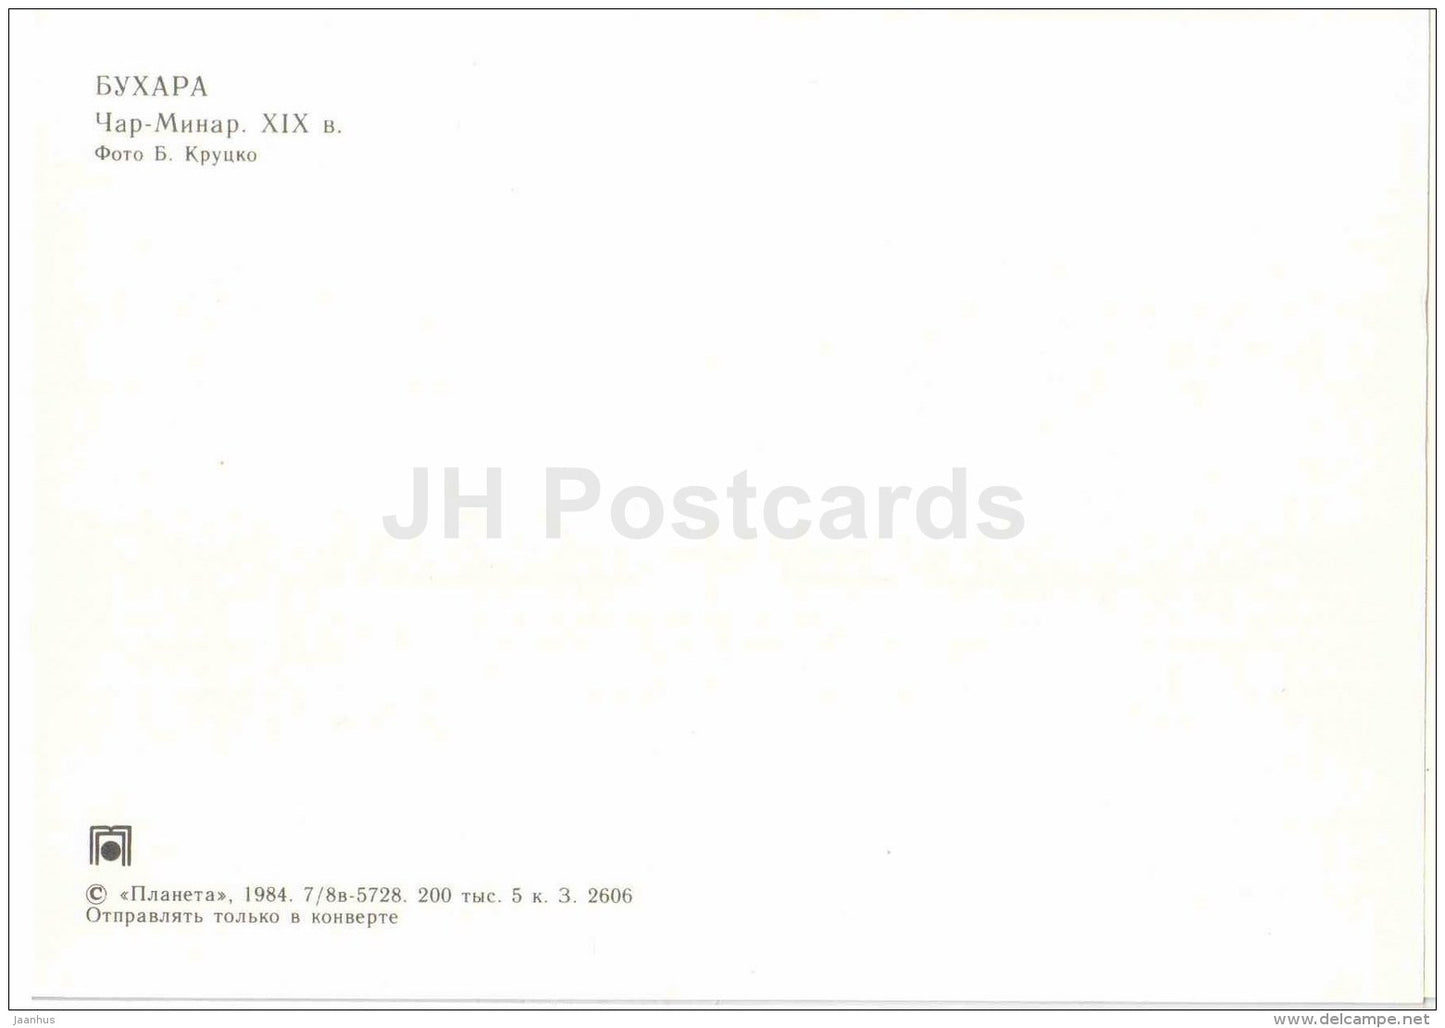 Char Minar - Bukhara - 1984 - Uzbekistan USSR - unused - JH Postcards